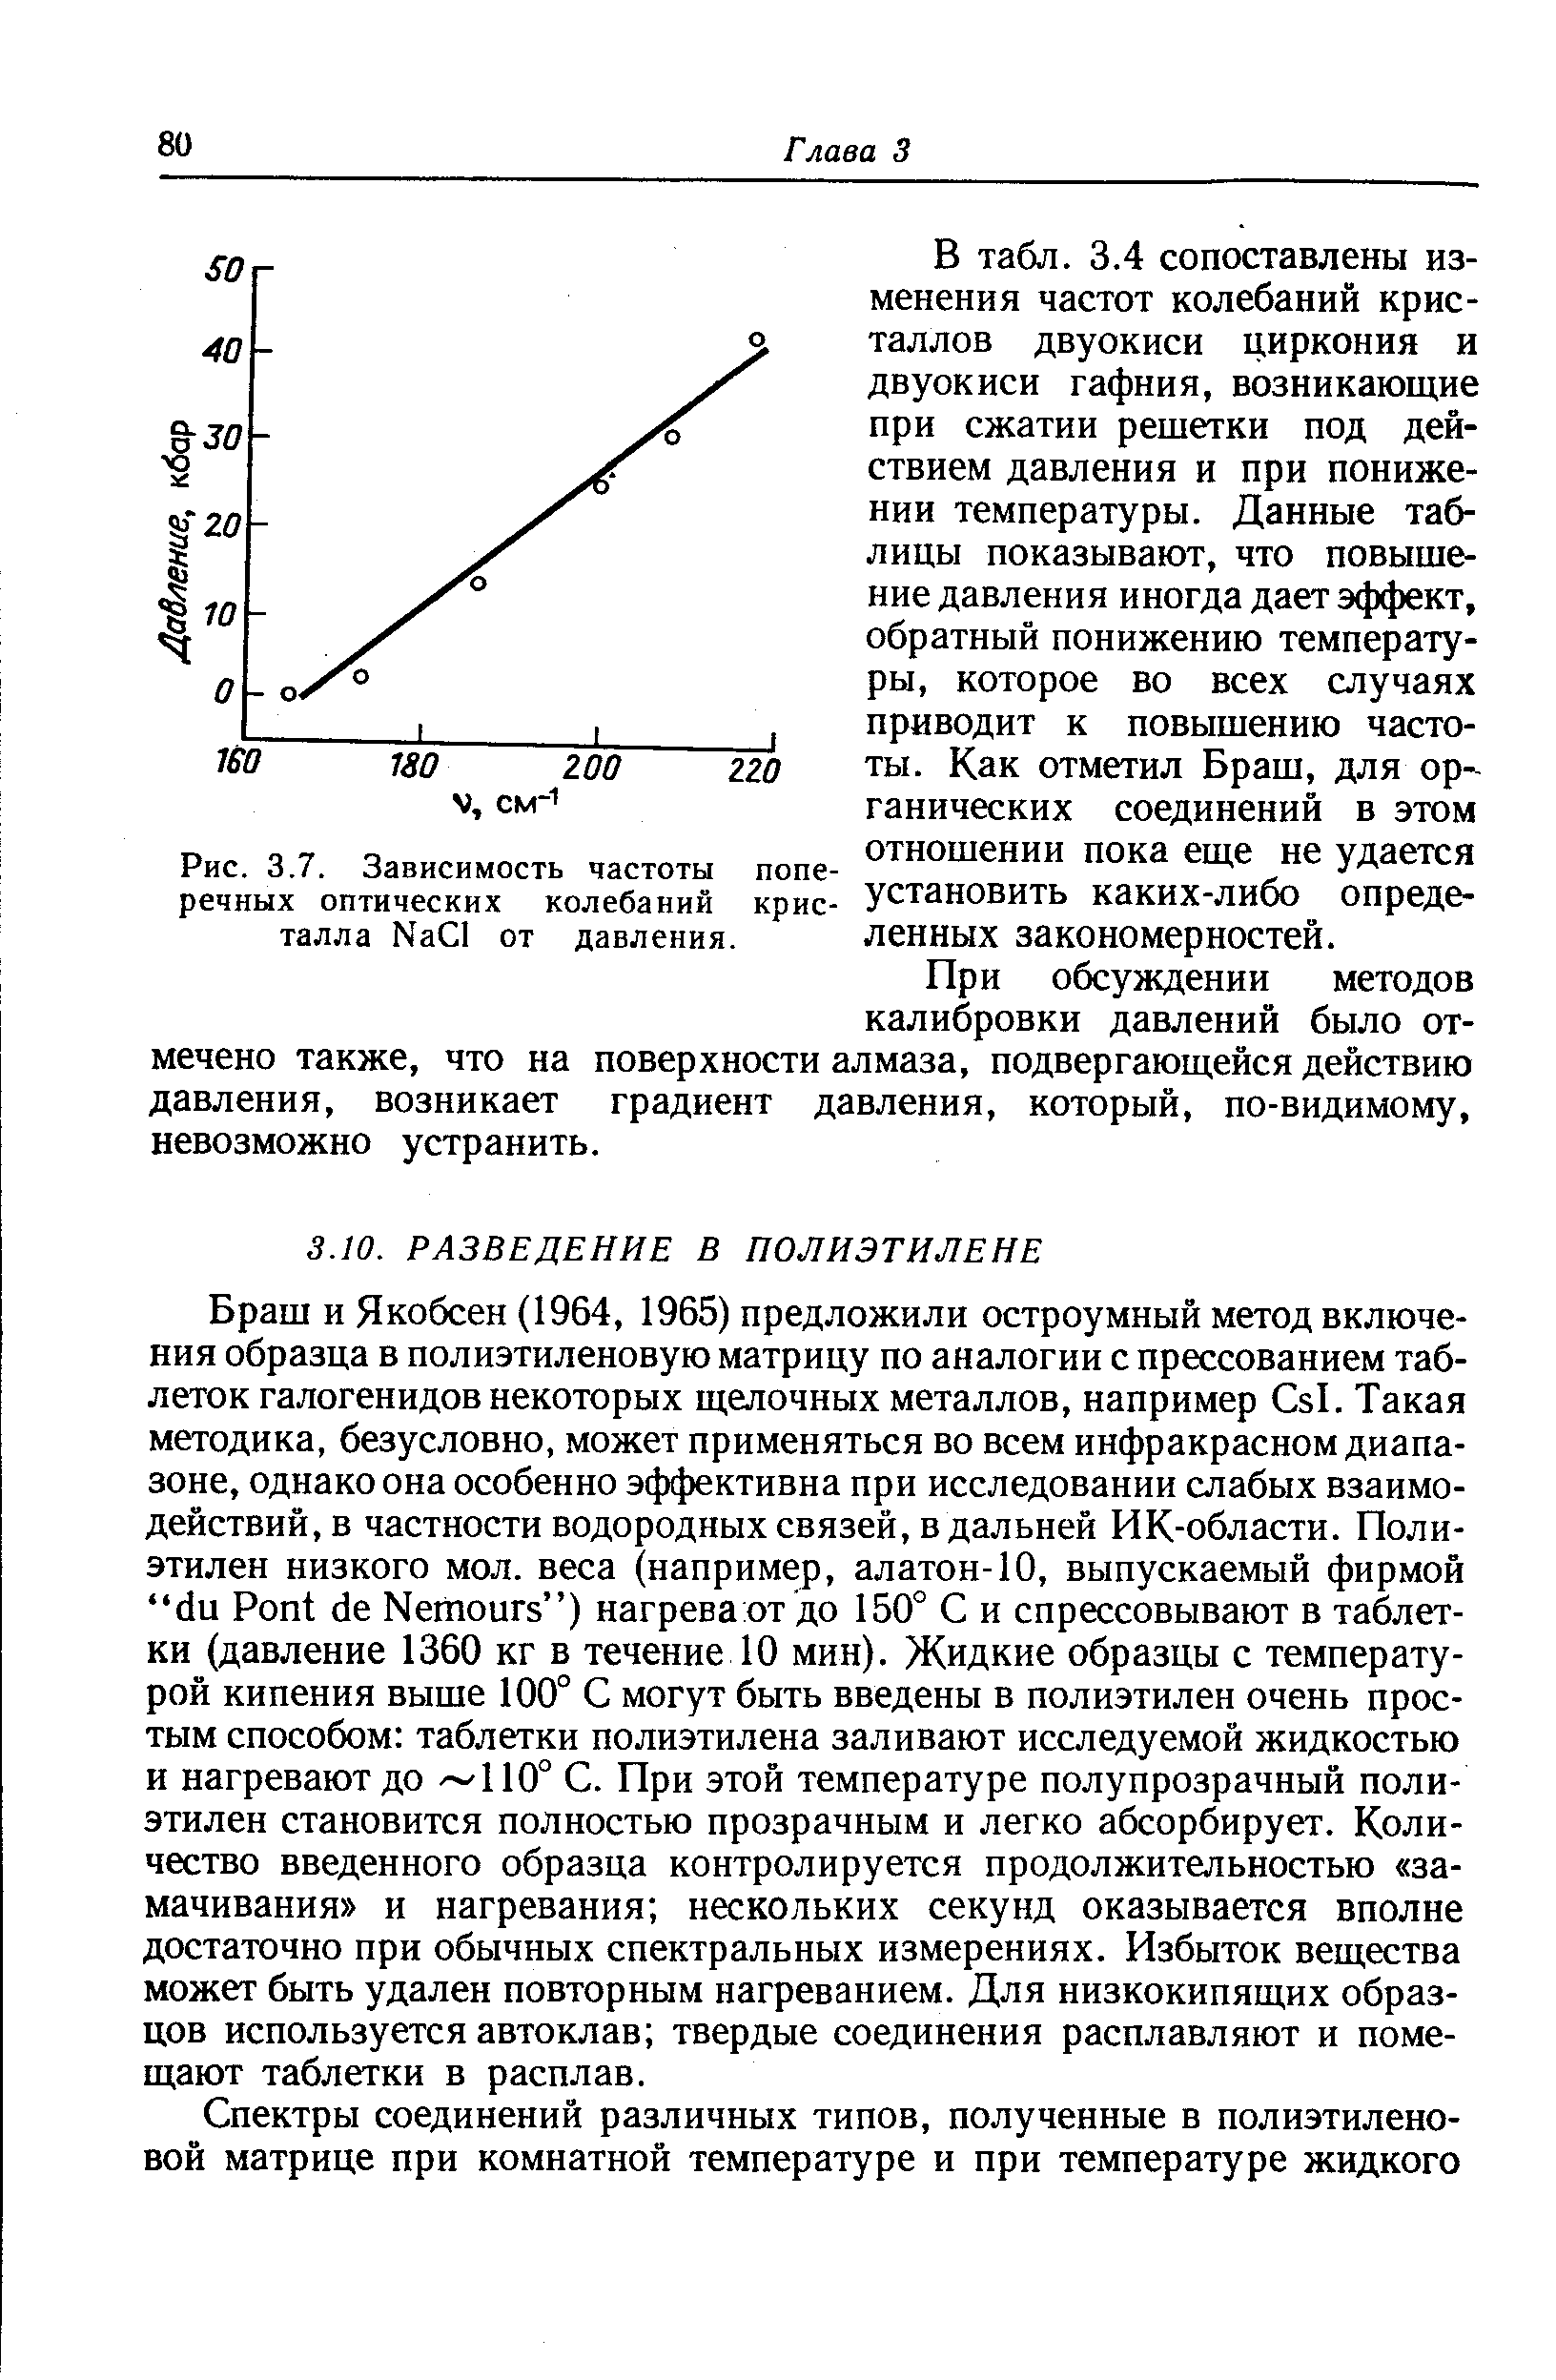 Браш и Якобсен (1964, 1965) предложили остроумный метод включения образца в полиэтиленовую матрицу по аналогии с прессованием таблеток галогенидов некоторых щелочных металлов, например Сз1. Такая методика, безусловно, может применяться во всем инфракрасном диапазоне, однако она особенно эффективна при исследовании слабых взаимодействий, в частности водородных связей, в дальней ИК-области. Полиэтилен низкого мол. веса (например, алатон-10, выпускаемый фирмой с1и Роп (1е Мешоигз ) нагрева от до 150° С и спрессовывают в таблетки (давление 1360 кг в течение 10 мин). Жидкие образцы с температурой кипения выше 100° С могут быть введены в полиэтилен очень простым способом таблетки полиэтилена заливают исследуемой жидкостью и нагревают до / 110° С. При этой температуре полупрозрачный полиэтилен становится полностью прозрачным и легко абсорбирует. Количество введенного образца контролируется продолжительностью замачивания и нагревания нескольких секунд оказывается вполне достаточно при обычных спектральных измерениях. Избыток вещества может быть удален повторным нагреванием. Для низкокипящих образцов используется автоклав твердые соединения расплавляют и помещают таблетки в расплав.